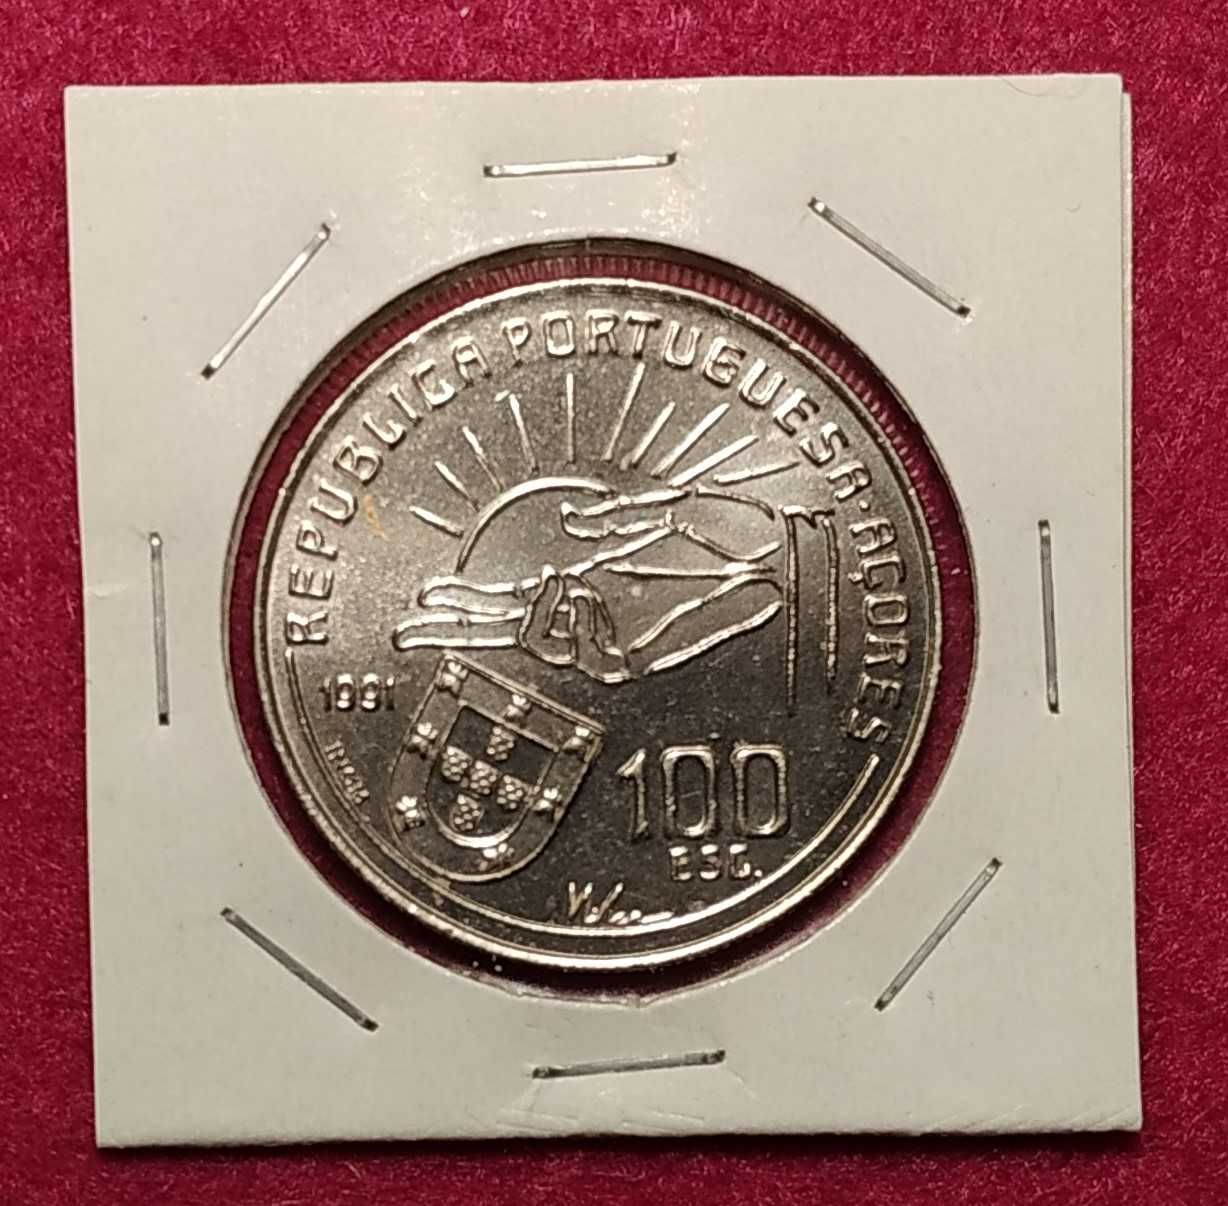 Portugal - moeda comemorativa de 100 escudos de 1991 Antero